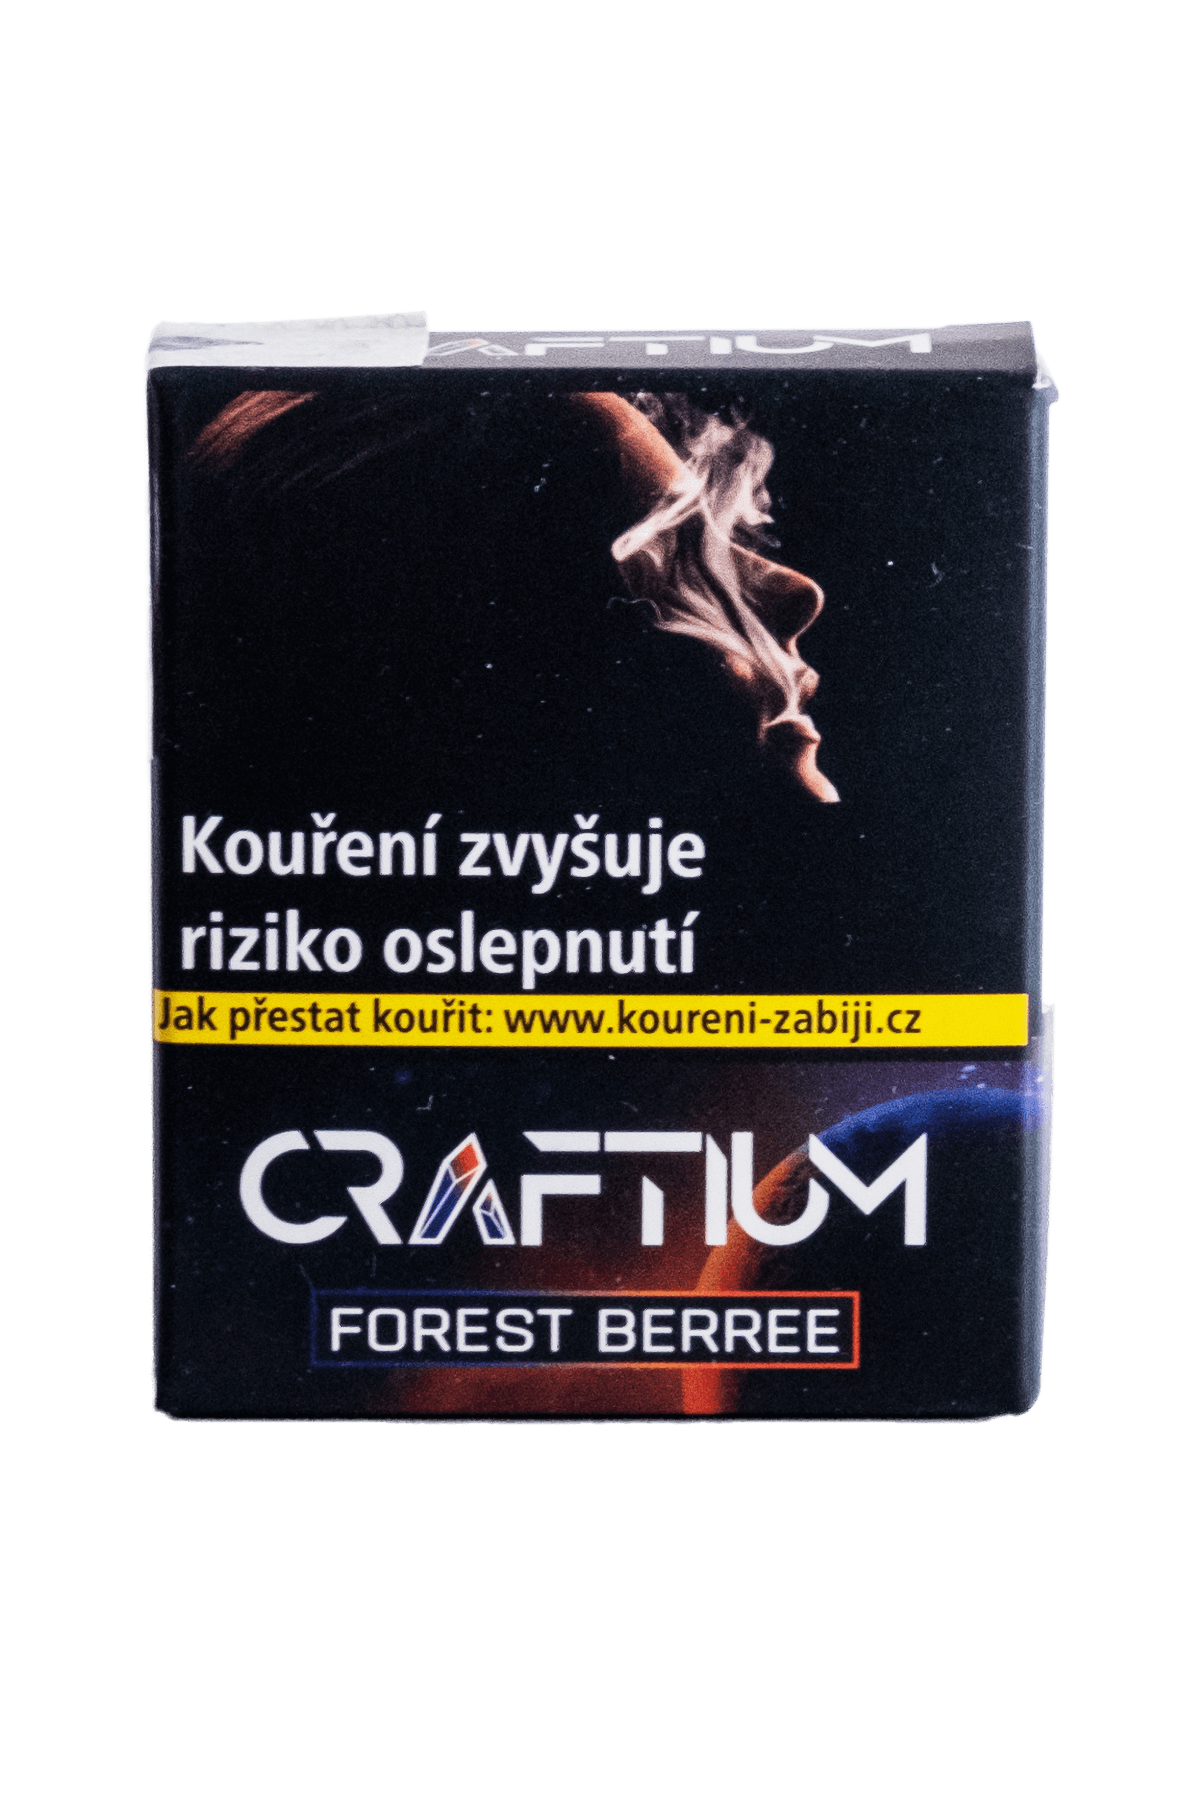 Tabák - Craftium 20g - Forest Berree